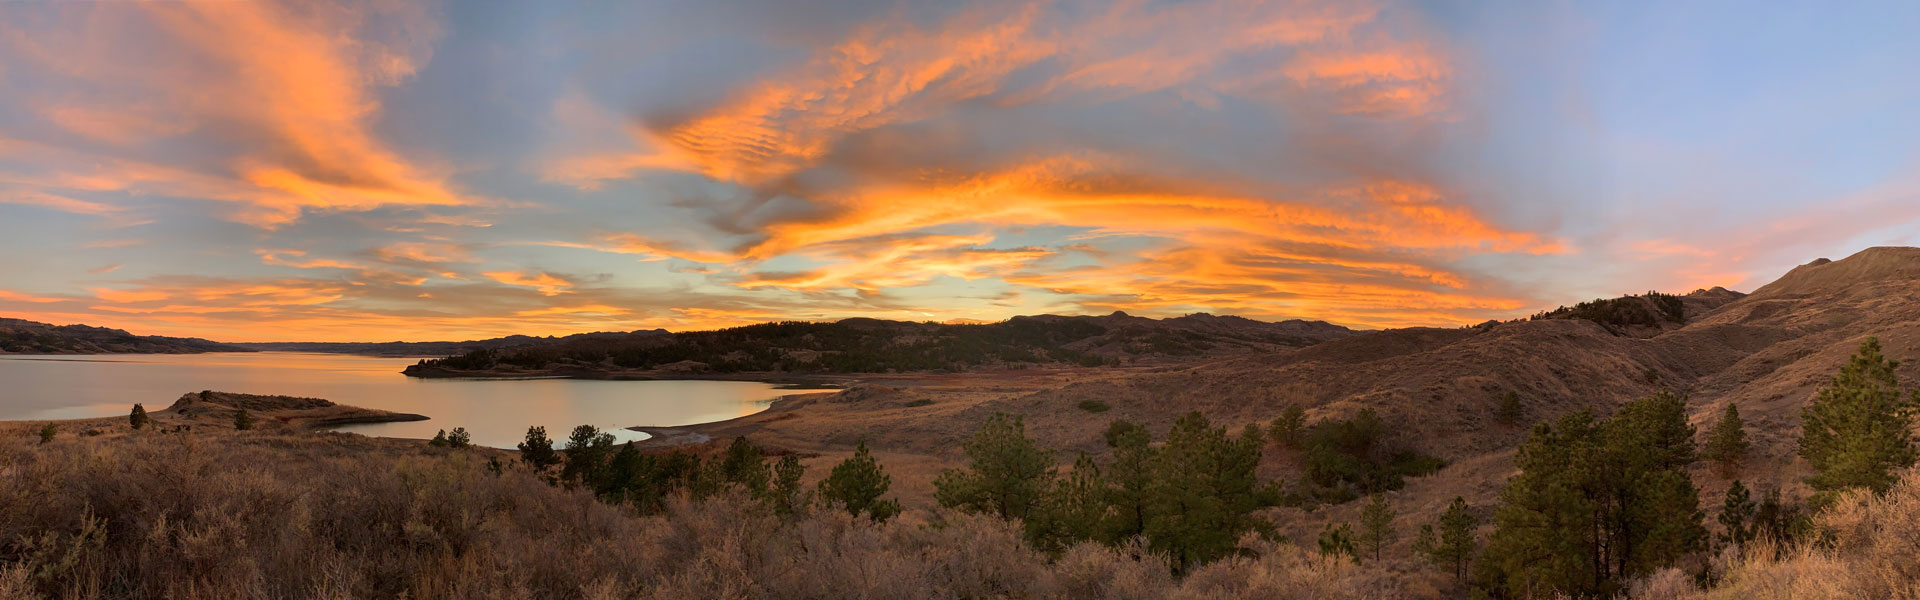 Sunset at Fort Peck Reservoir